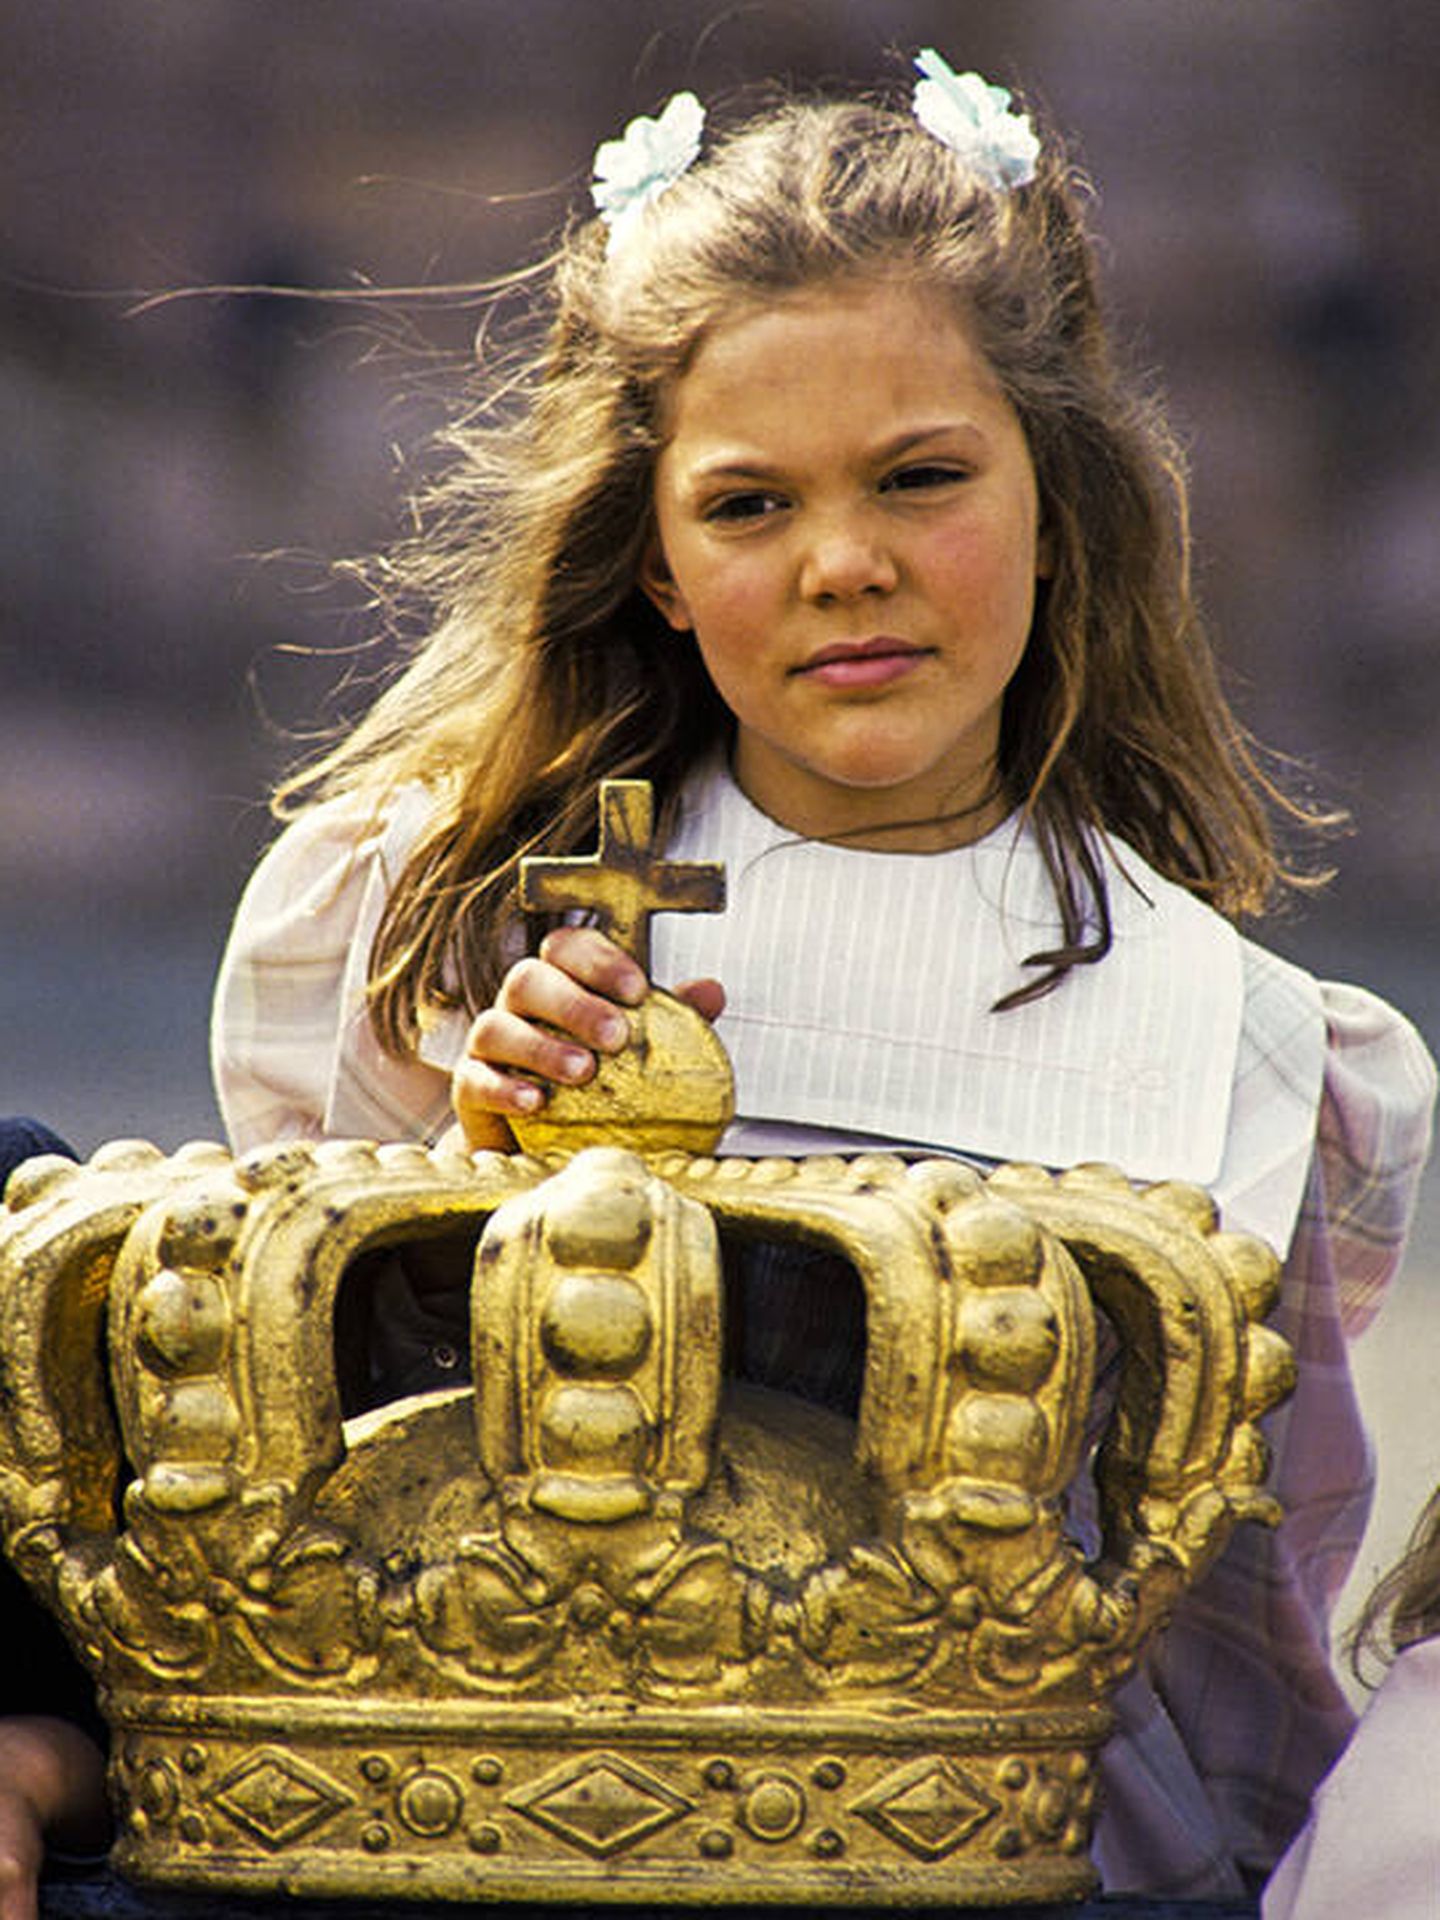 La princesa Victoria en 1987, cuando tenía 10 años. (Kungahuset)